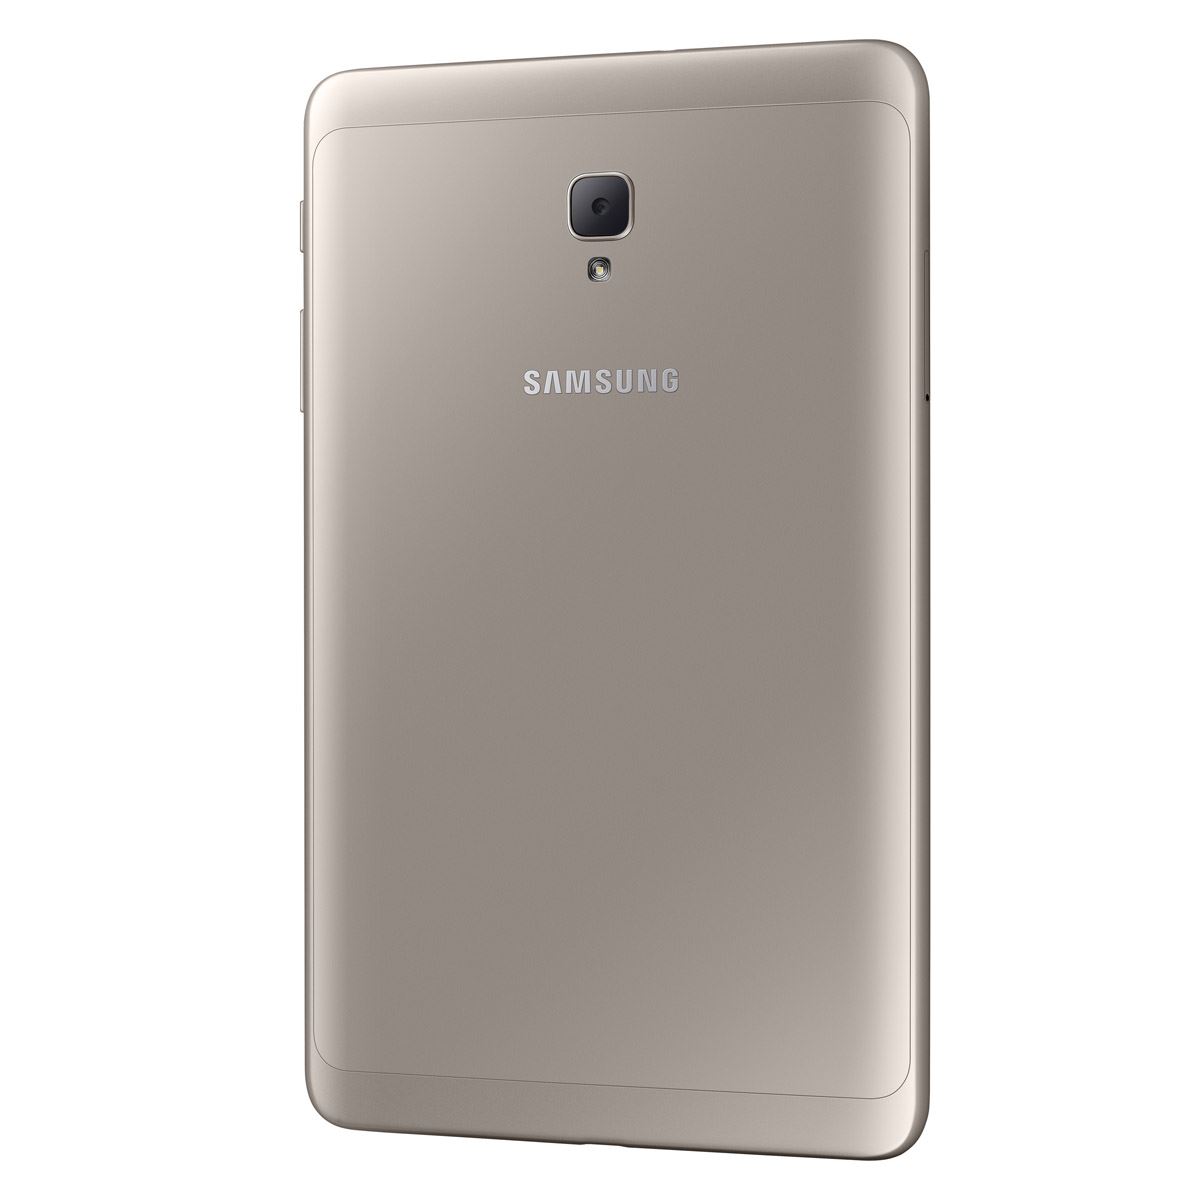 Samsung Galaxy Tab A 8 Gold